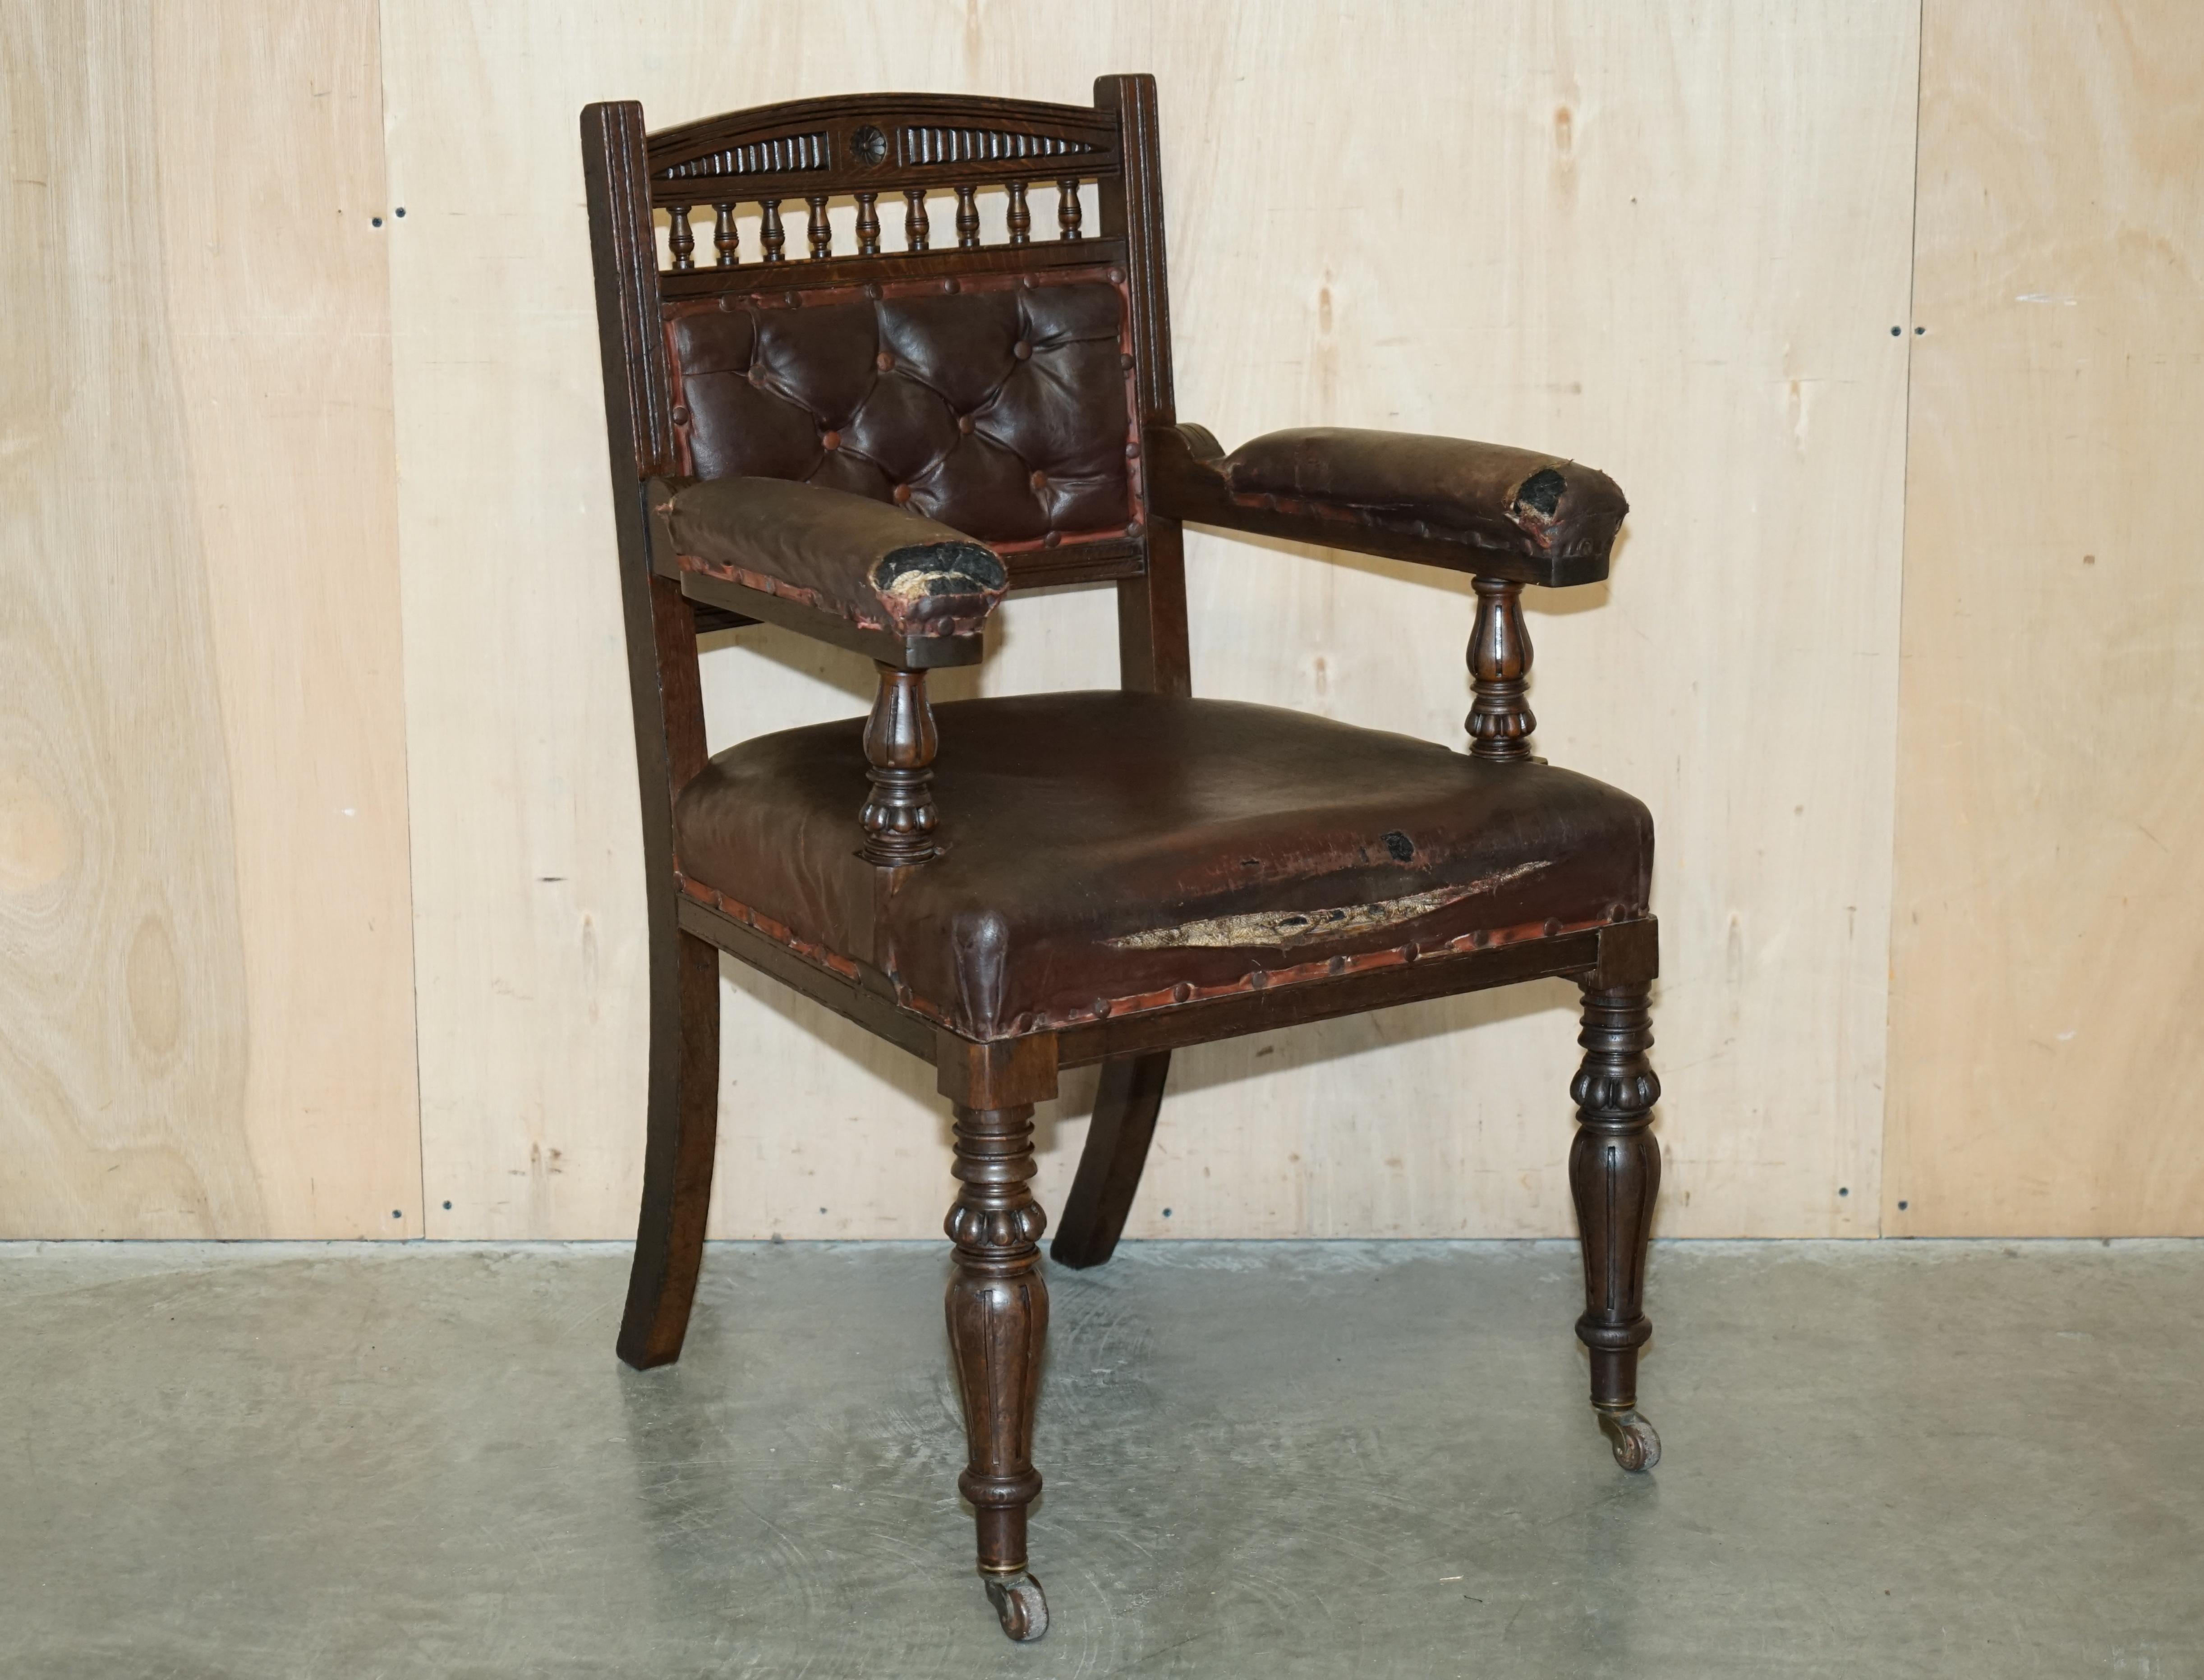 Royal House Antiques

Royal House Antiques freut sich, diesen originalen viktorianischen Sessel im Stil der Ästhetischen Bewegung um 1860 mit originaler brauner Lederpolsterung zur Restaurierung anbieten zu können. 

Bitte beachten Sie die